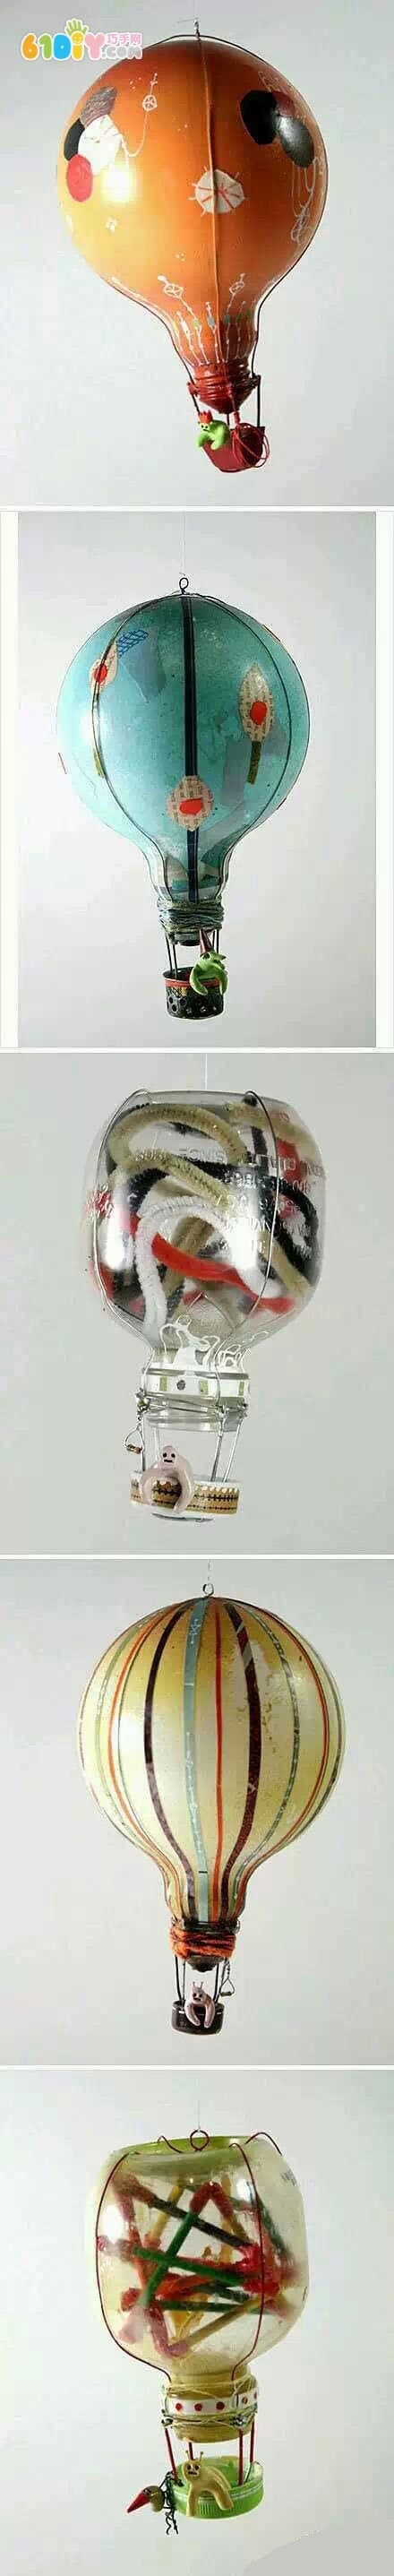 旧灯泡和小瓶子制作卡通热气球